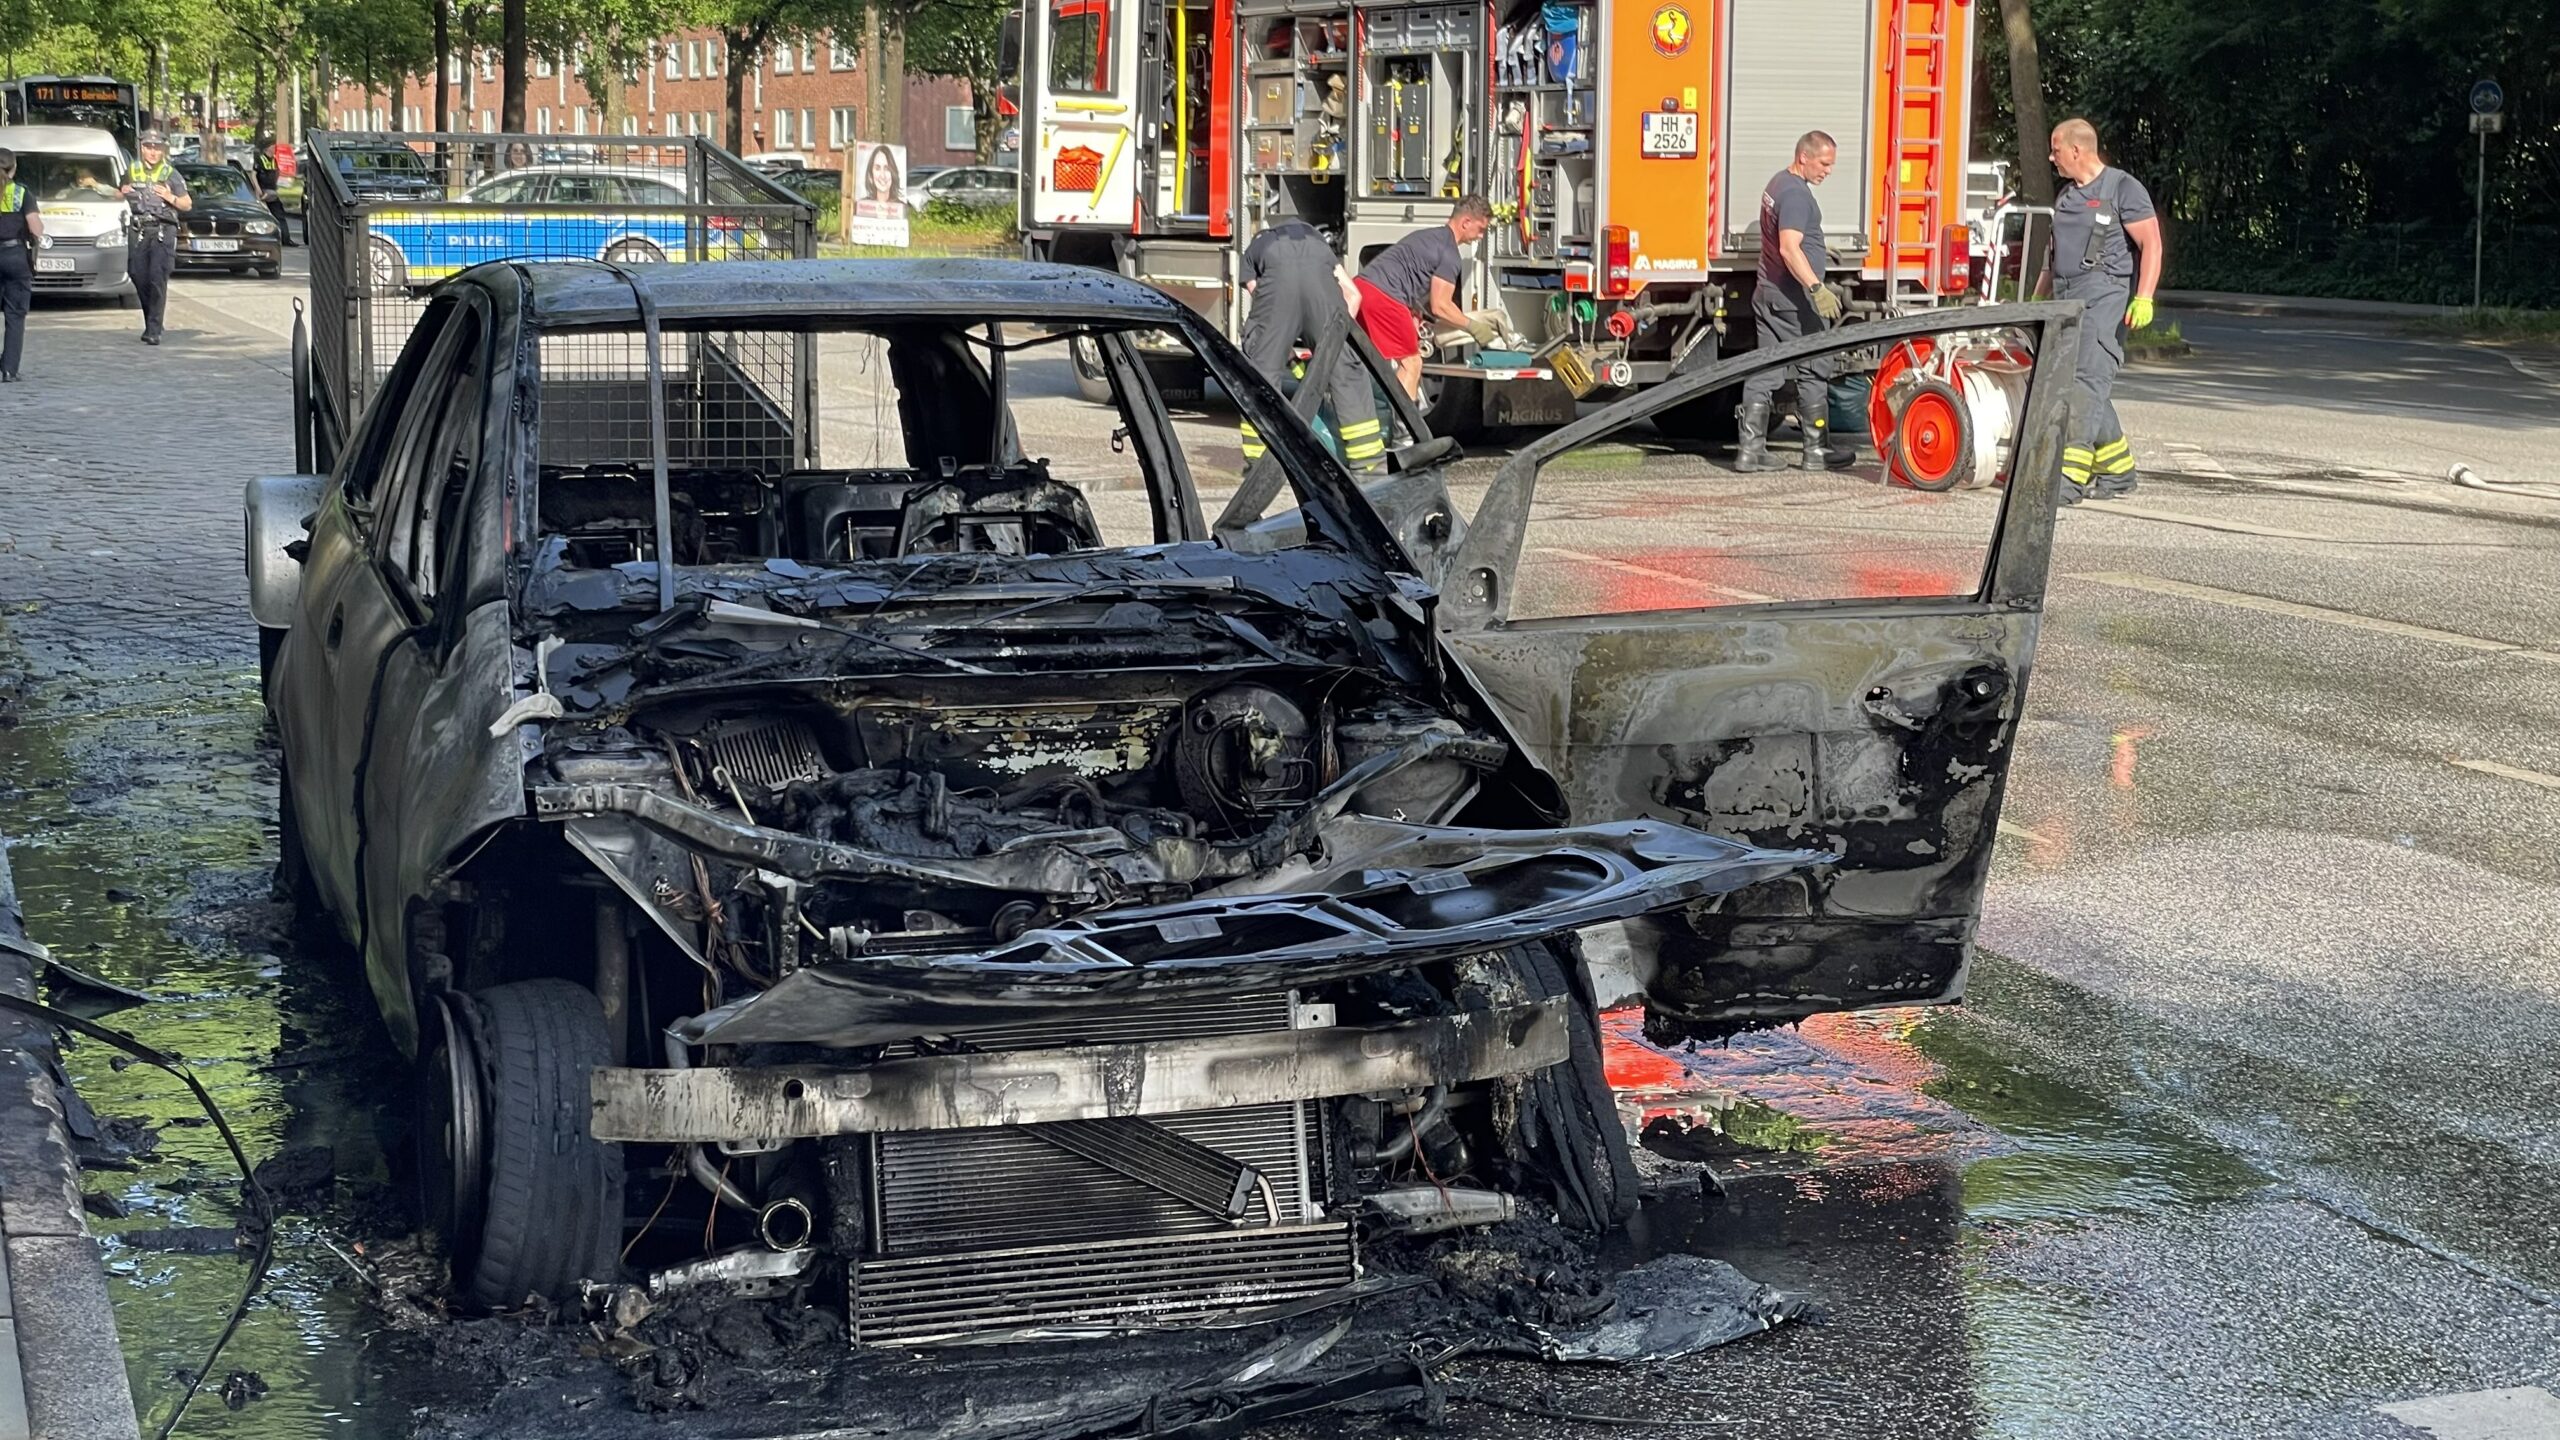 Mitten auf dem Friedrich-Ebert-Damm fing dieses Auto während der Fahrt Feuer und brannte vollkommen aus. Der Fahrer konnte sich retten.